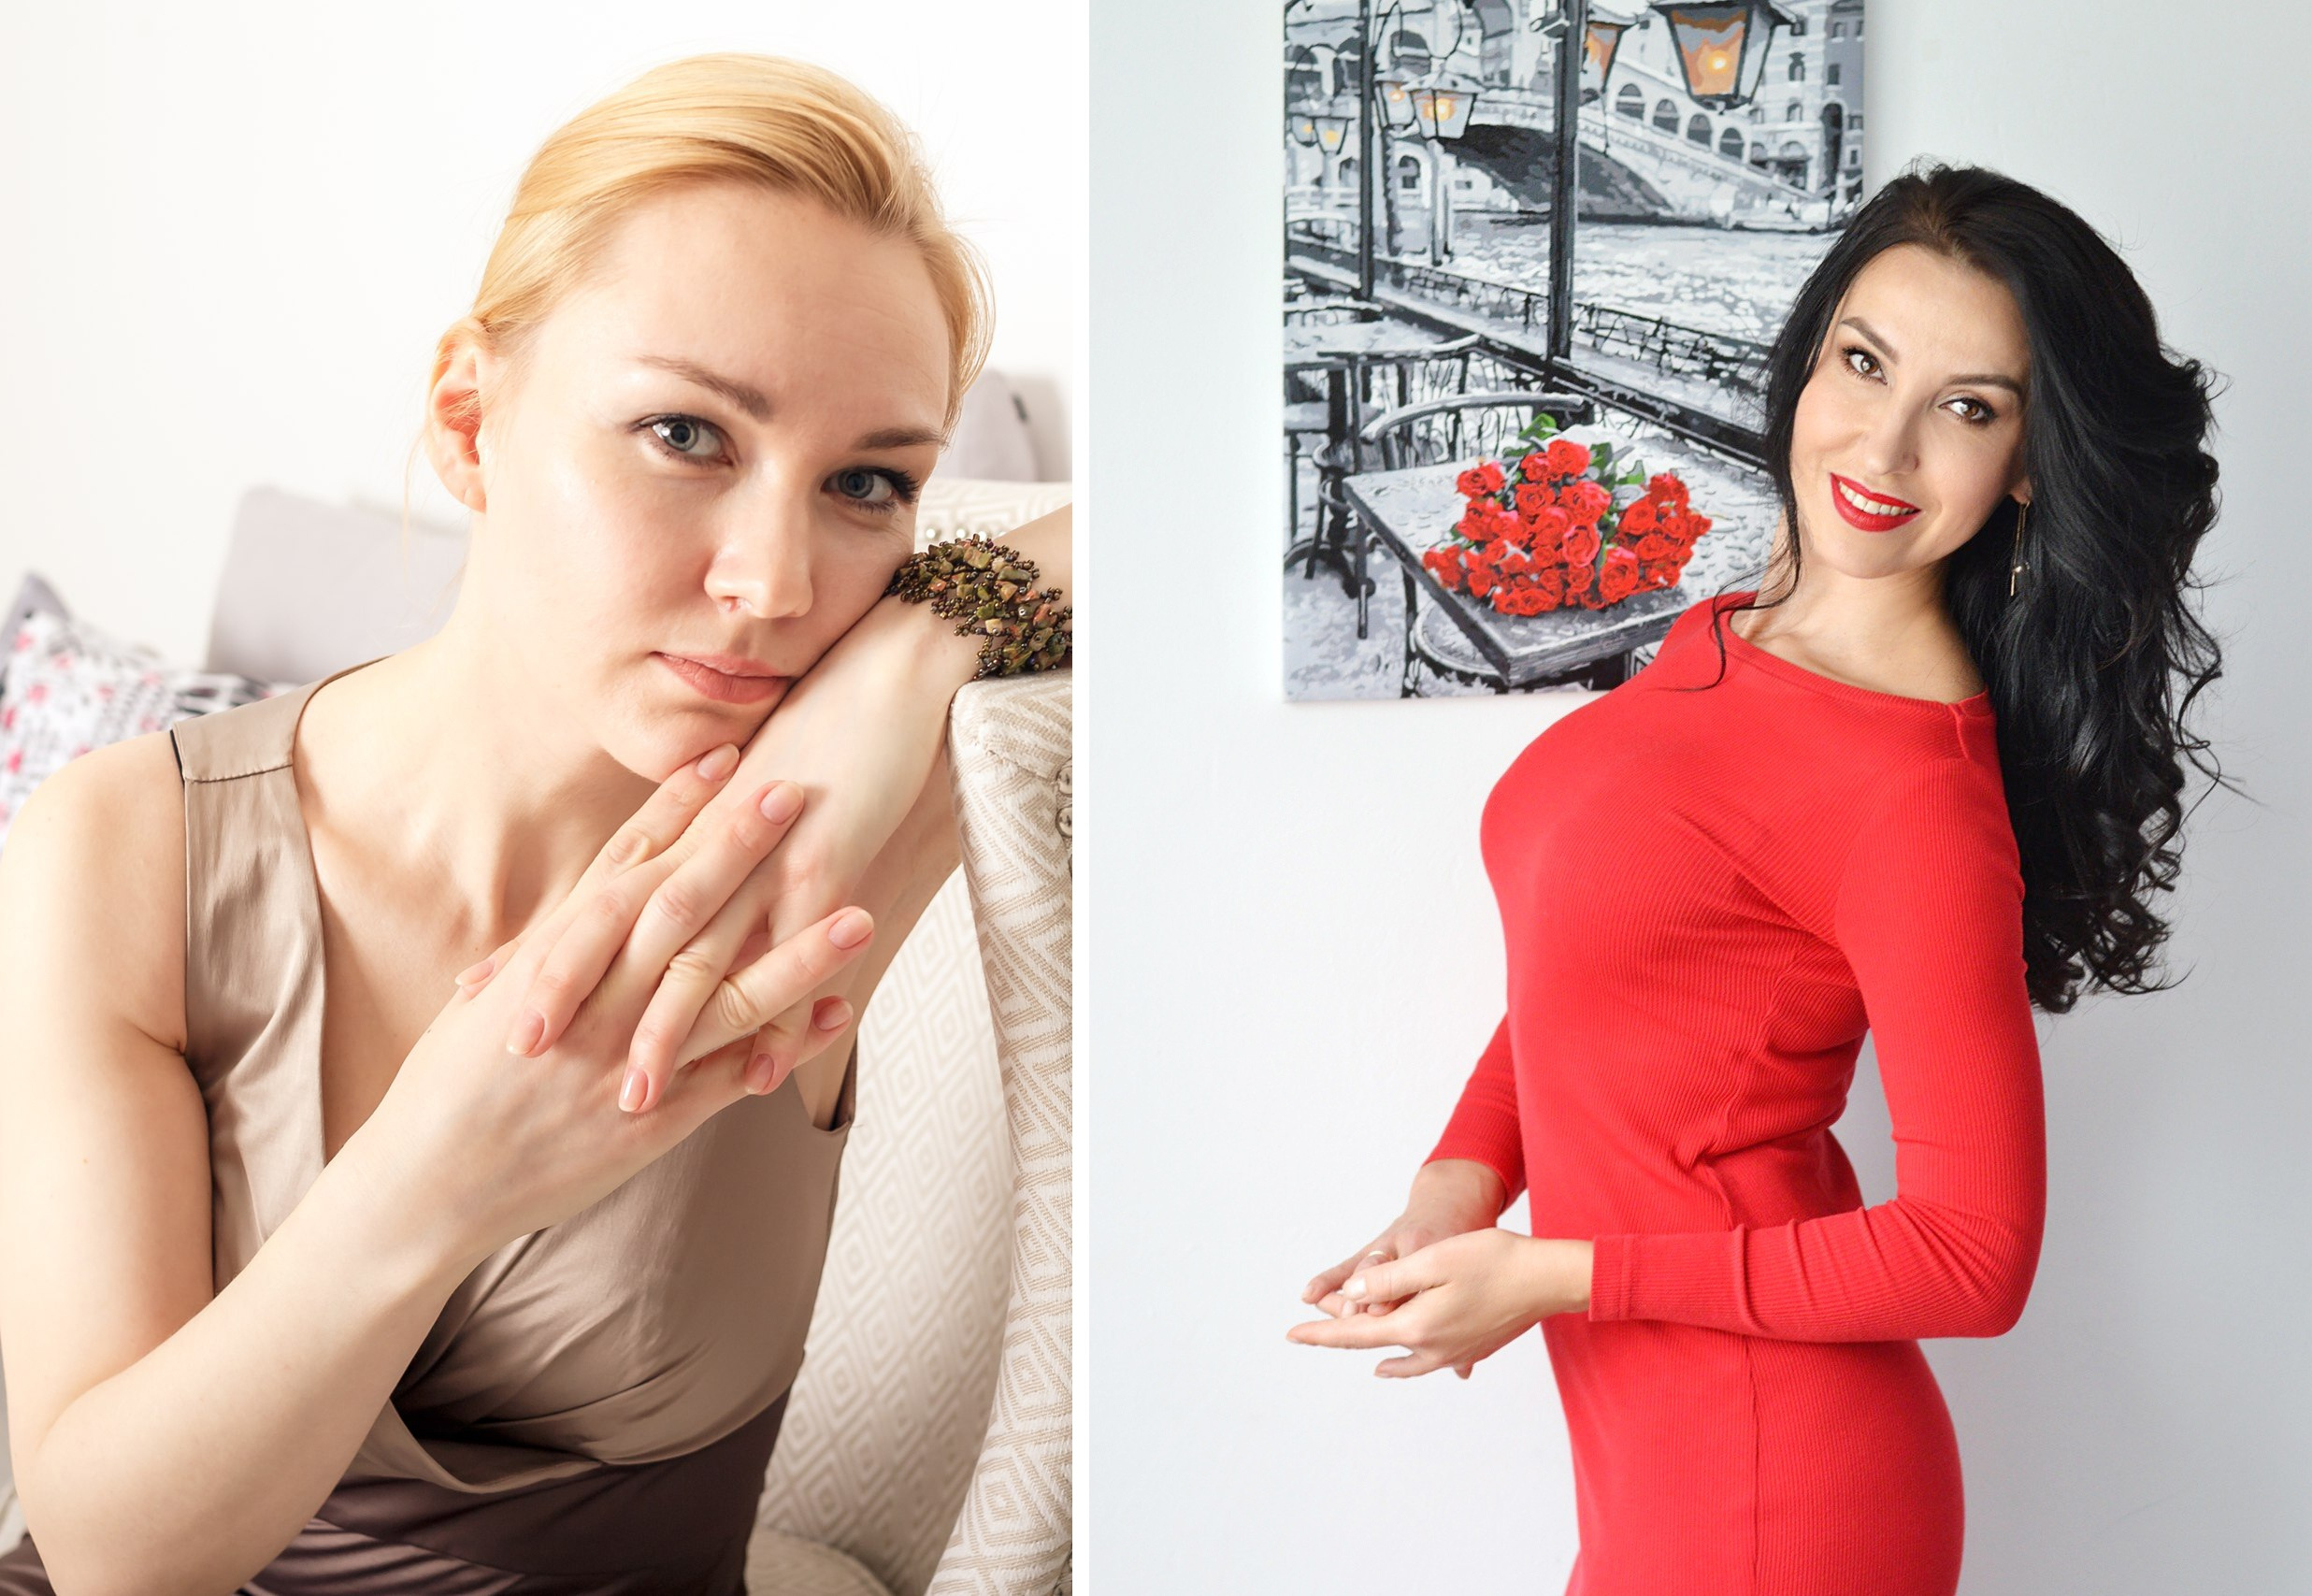 Слева психолог Анна Левченко, справа — сексолог Ольга Каренеева. Обе считают тему культурно-сексуального образования важной в жизни детей